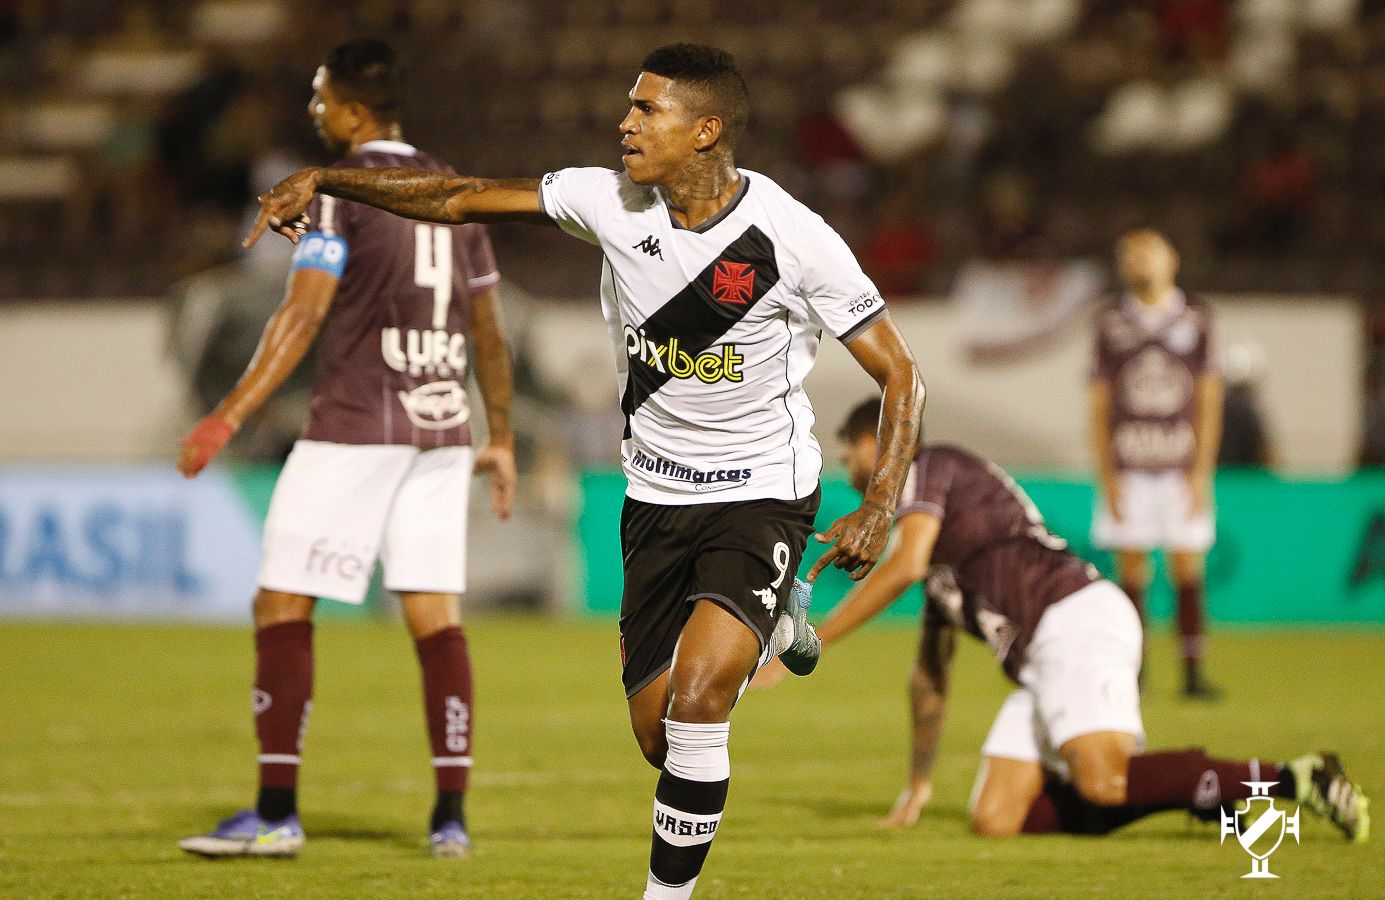 GOL: Fora de casa, Vasco vence Criciúma e segue na cola do líder Cruzeiro na Série B